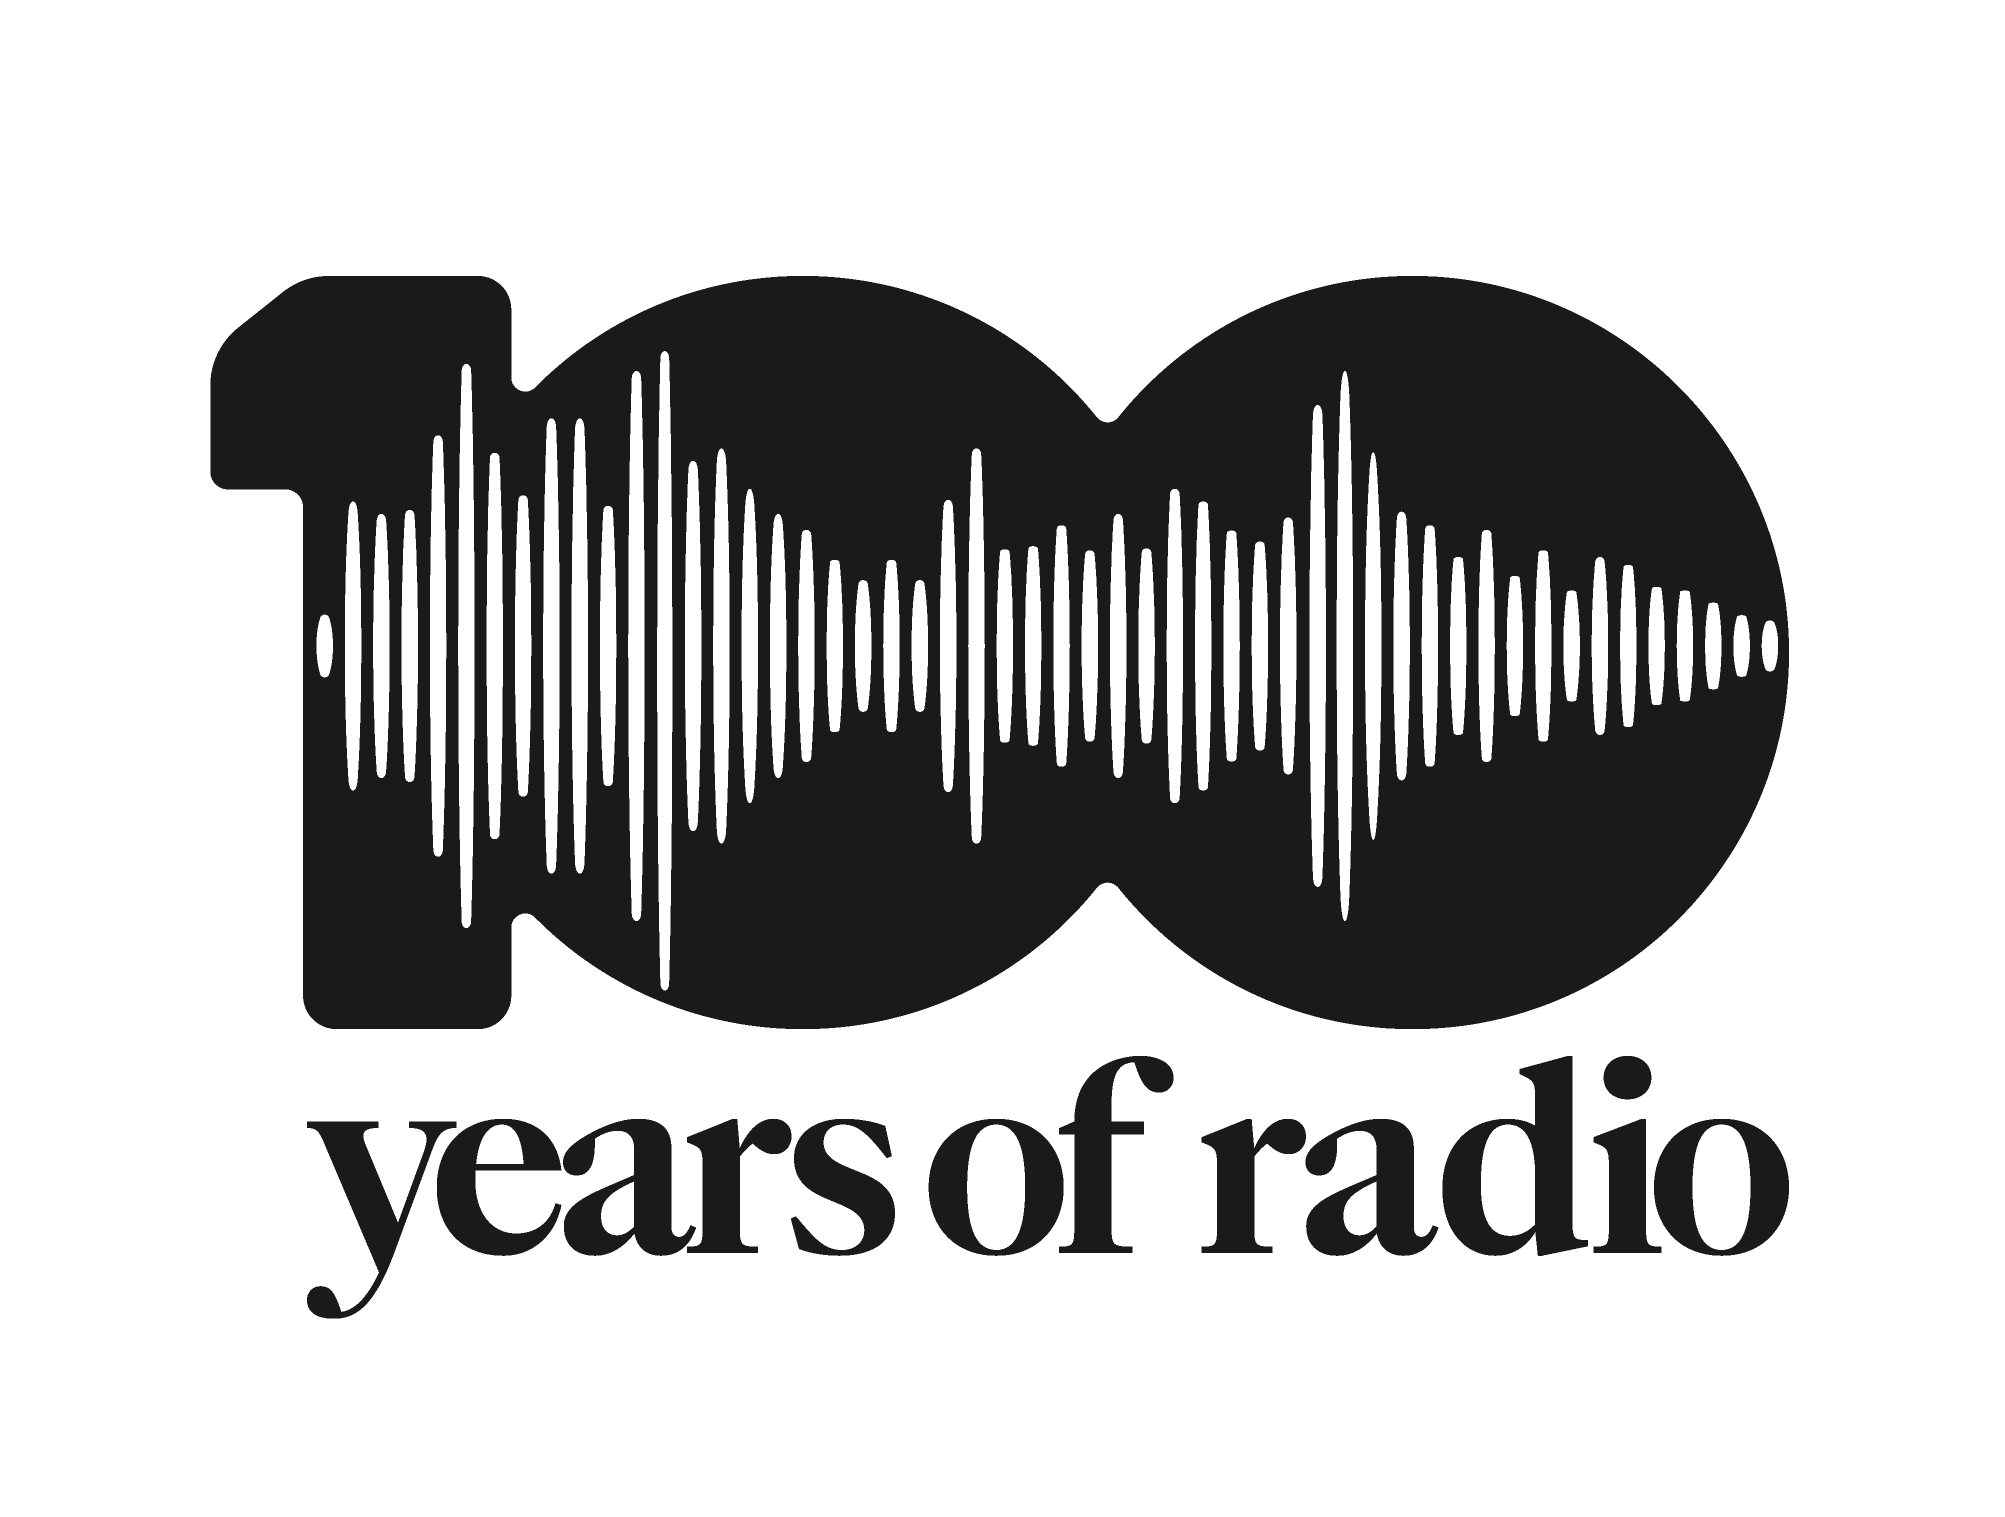 100 Years of Radio